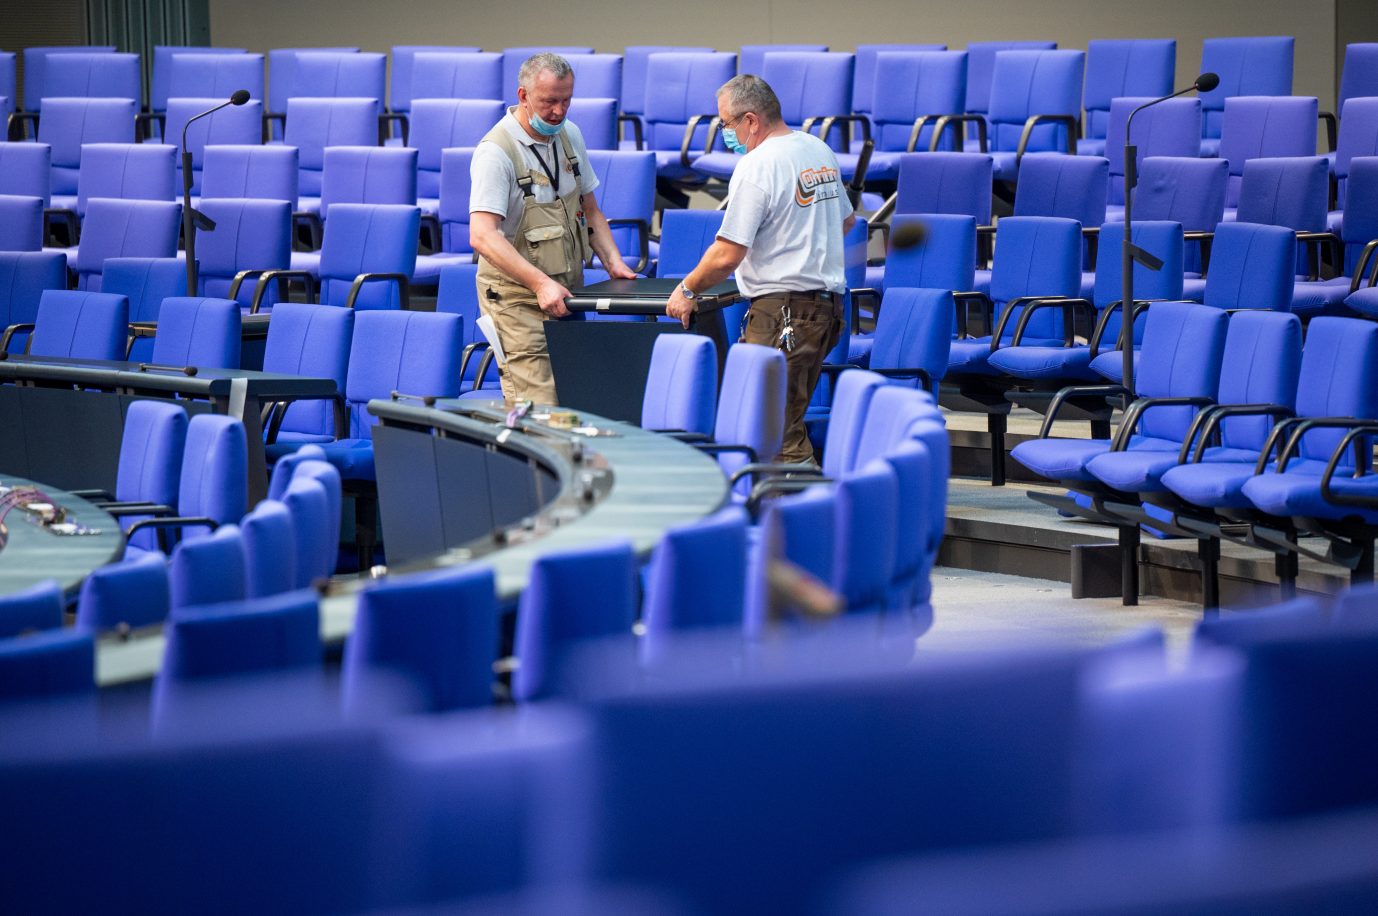 Umbau des Plenarsaals: Allein das Umstecken der Stühle und Pulte kostete etwa 5.000 Euro